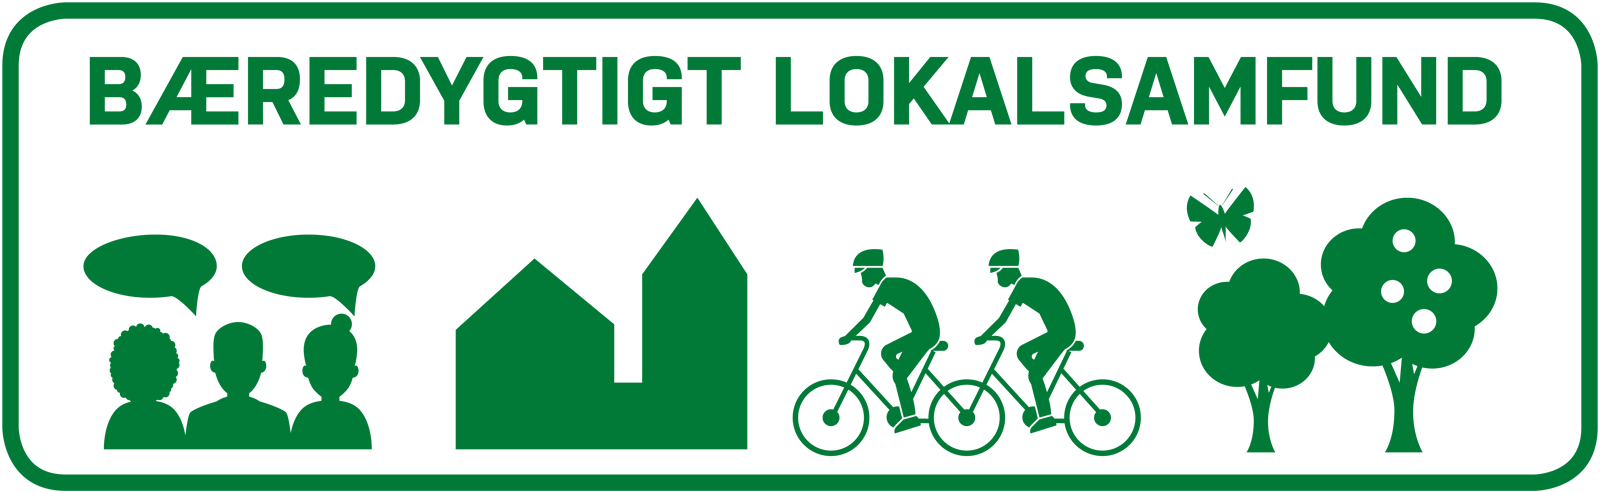 Bæredygtigt Lokalsamfund logo